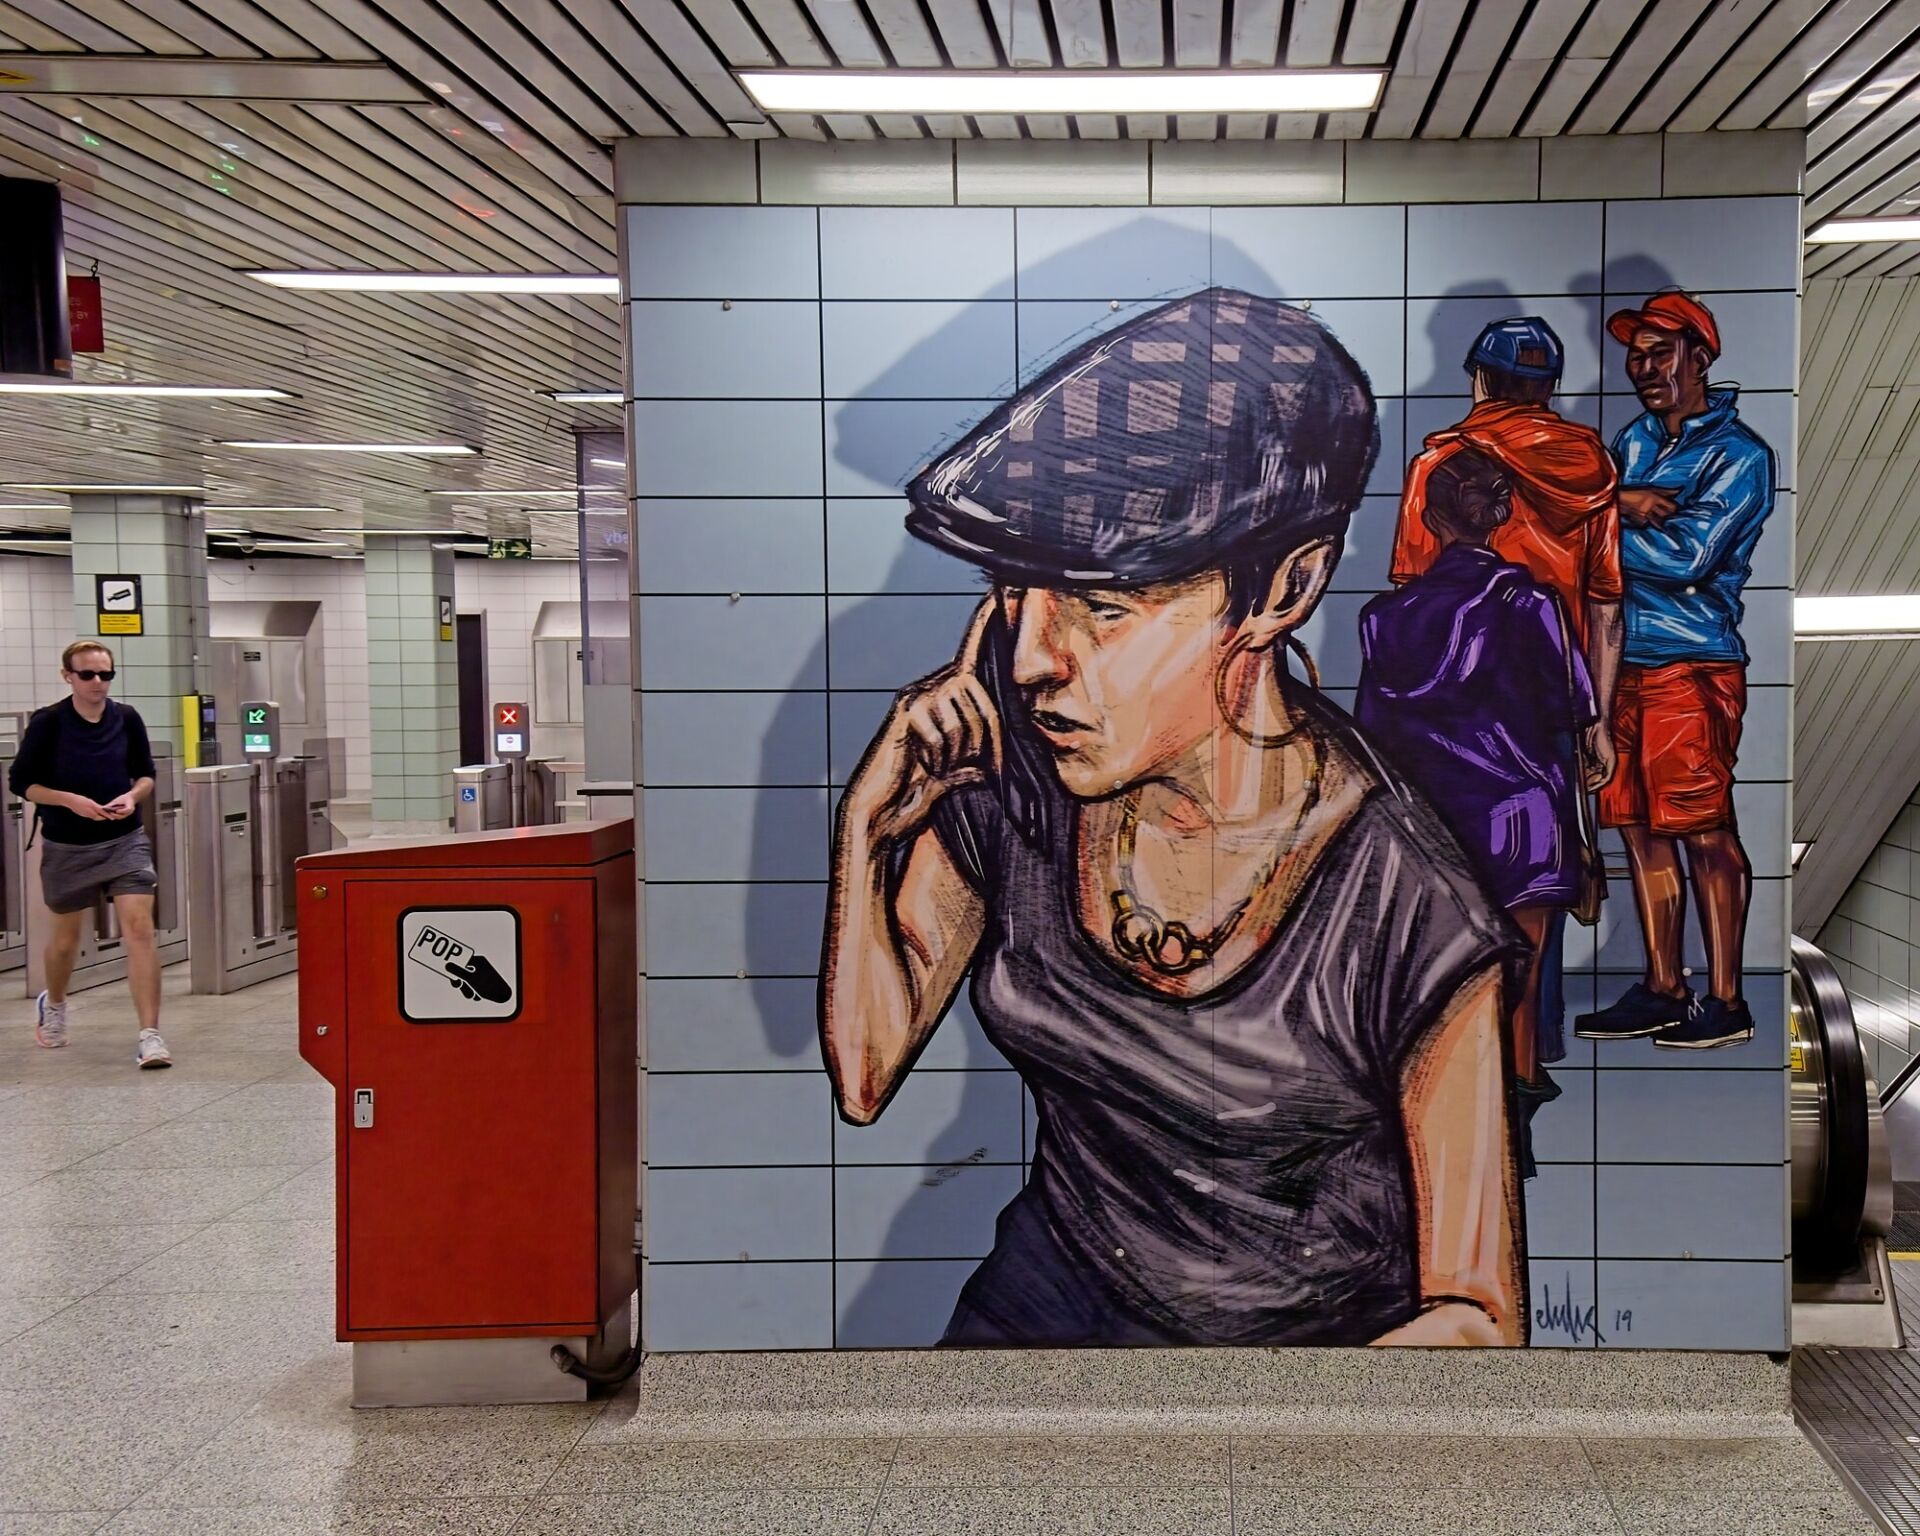 Mural inside the station